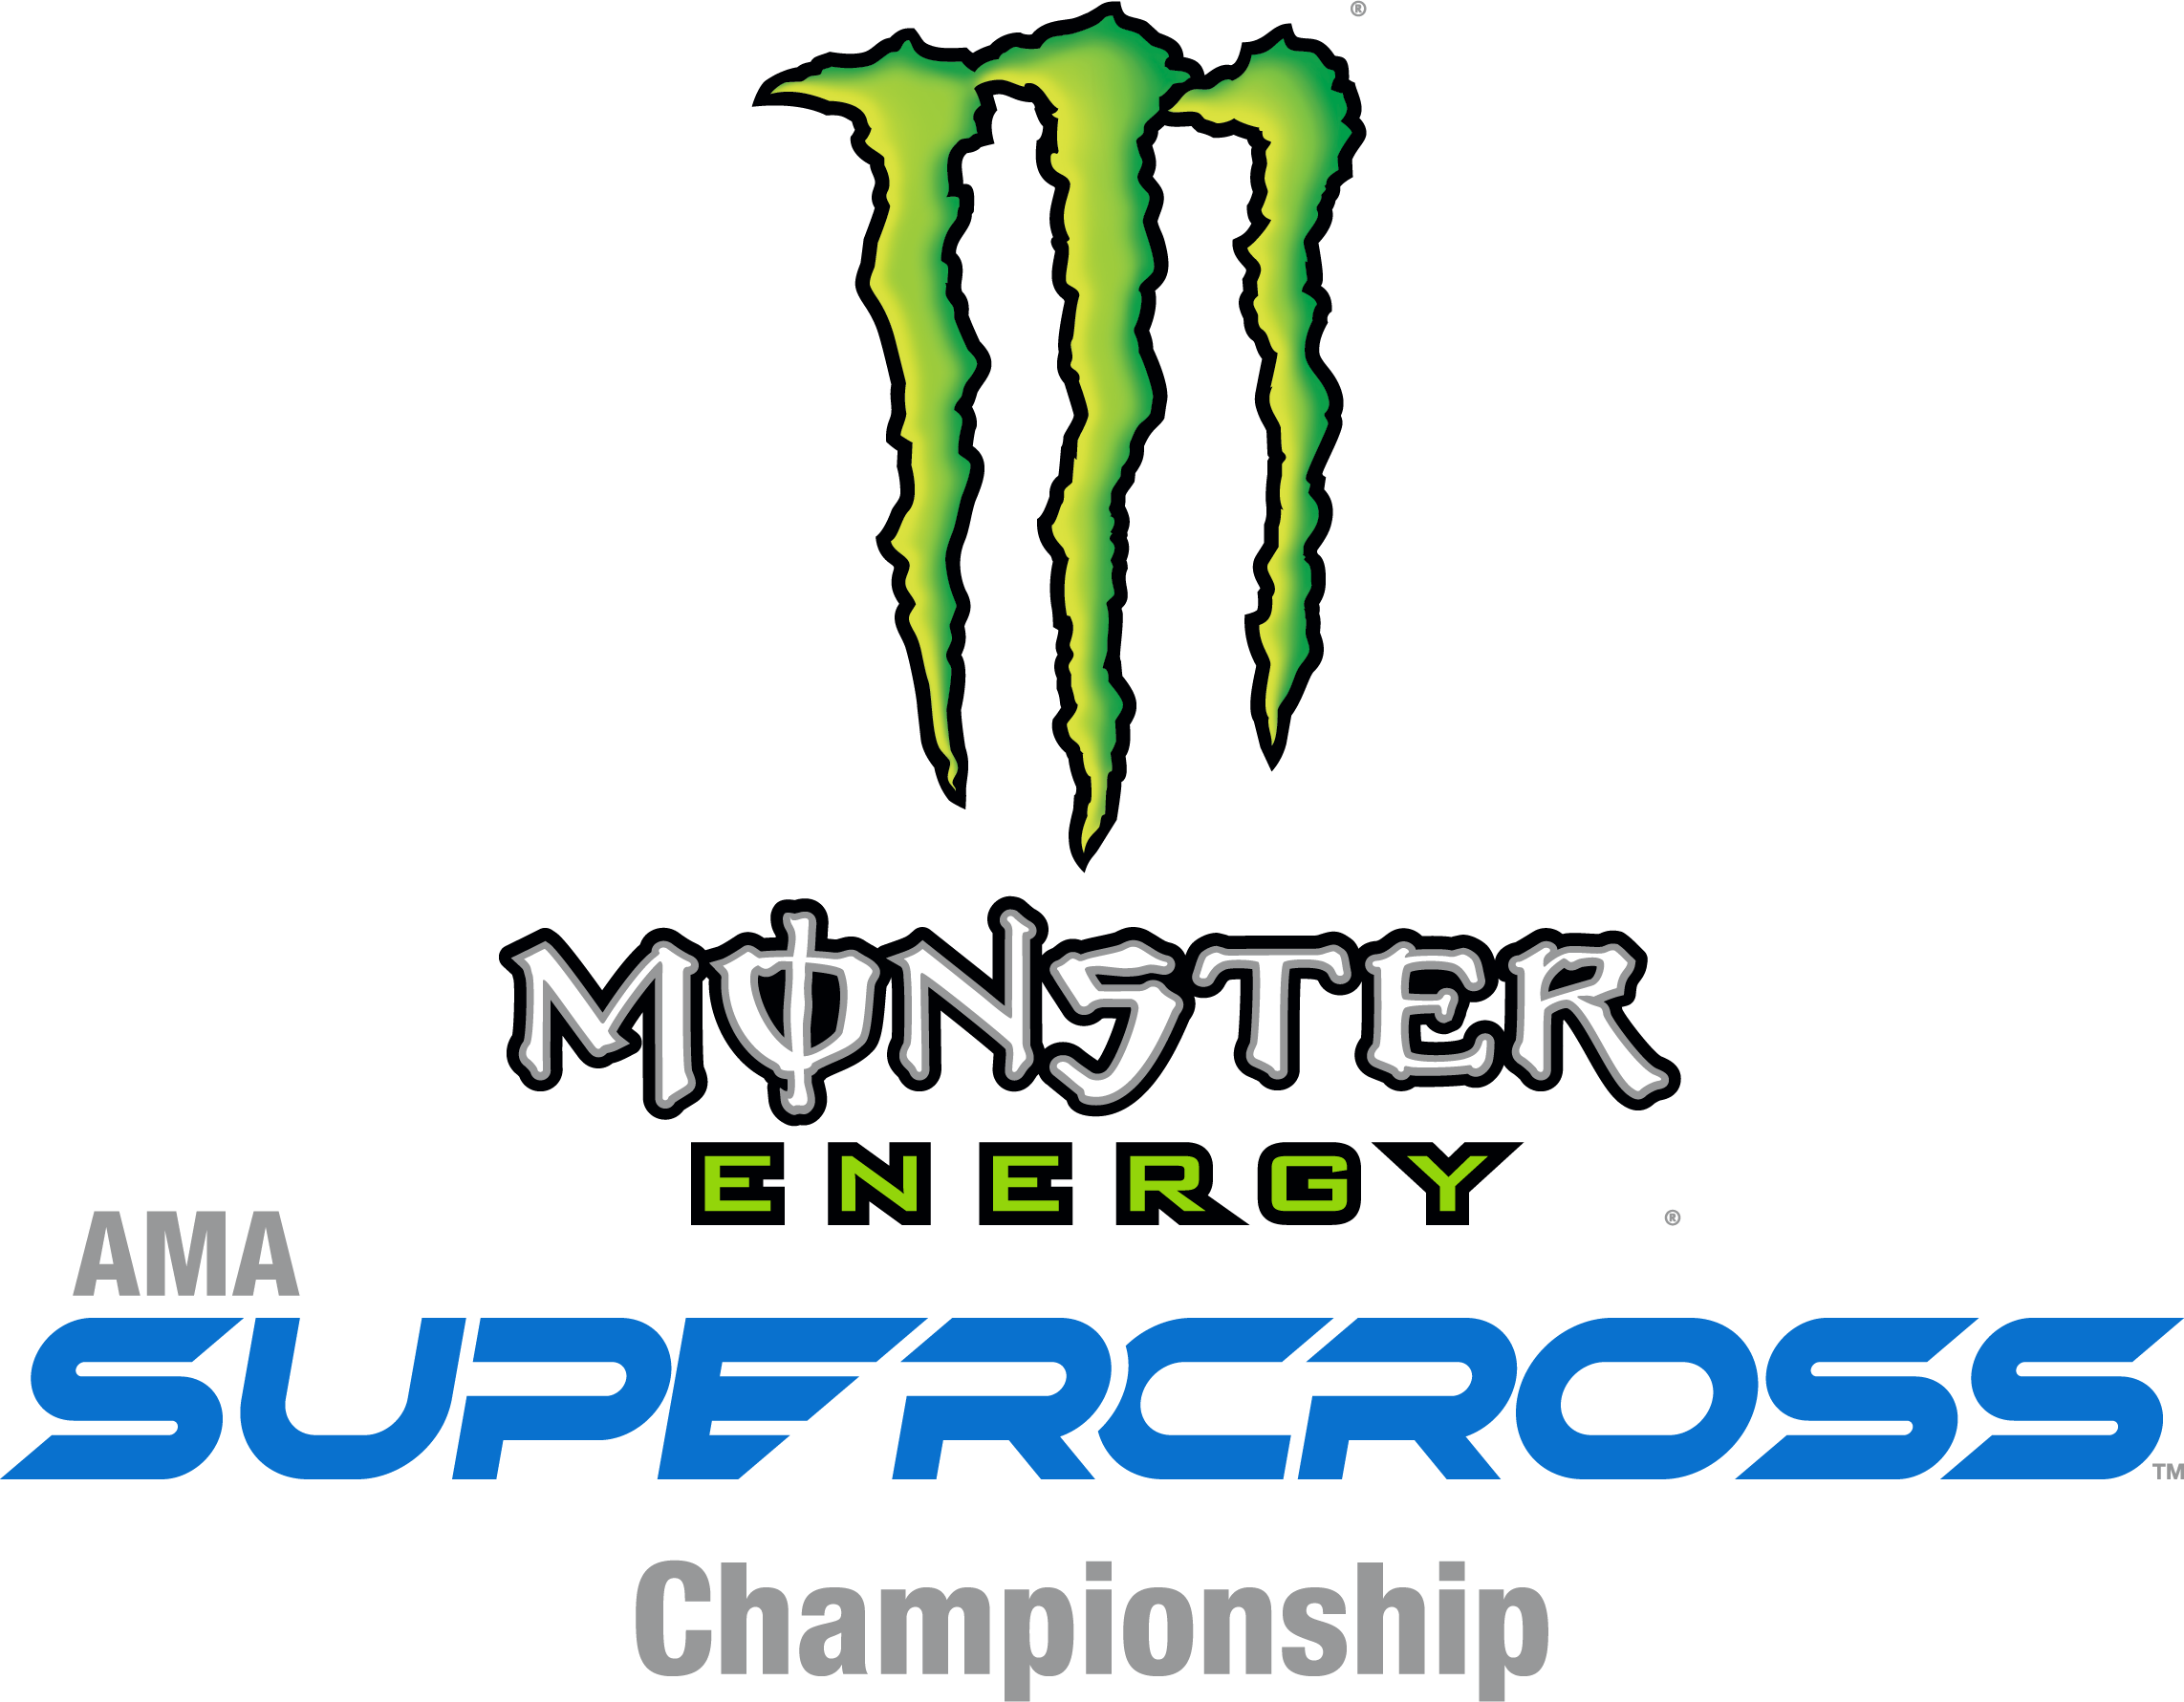 supercross logo